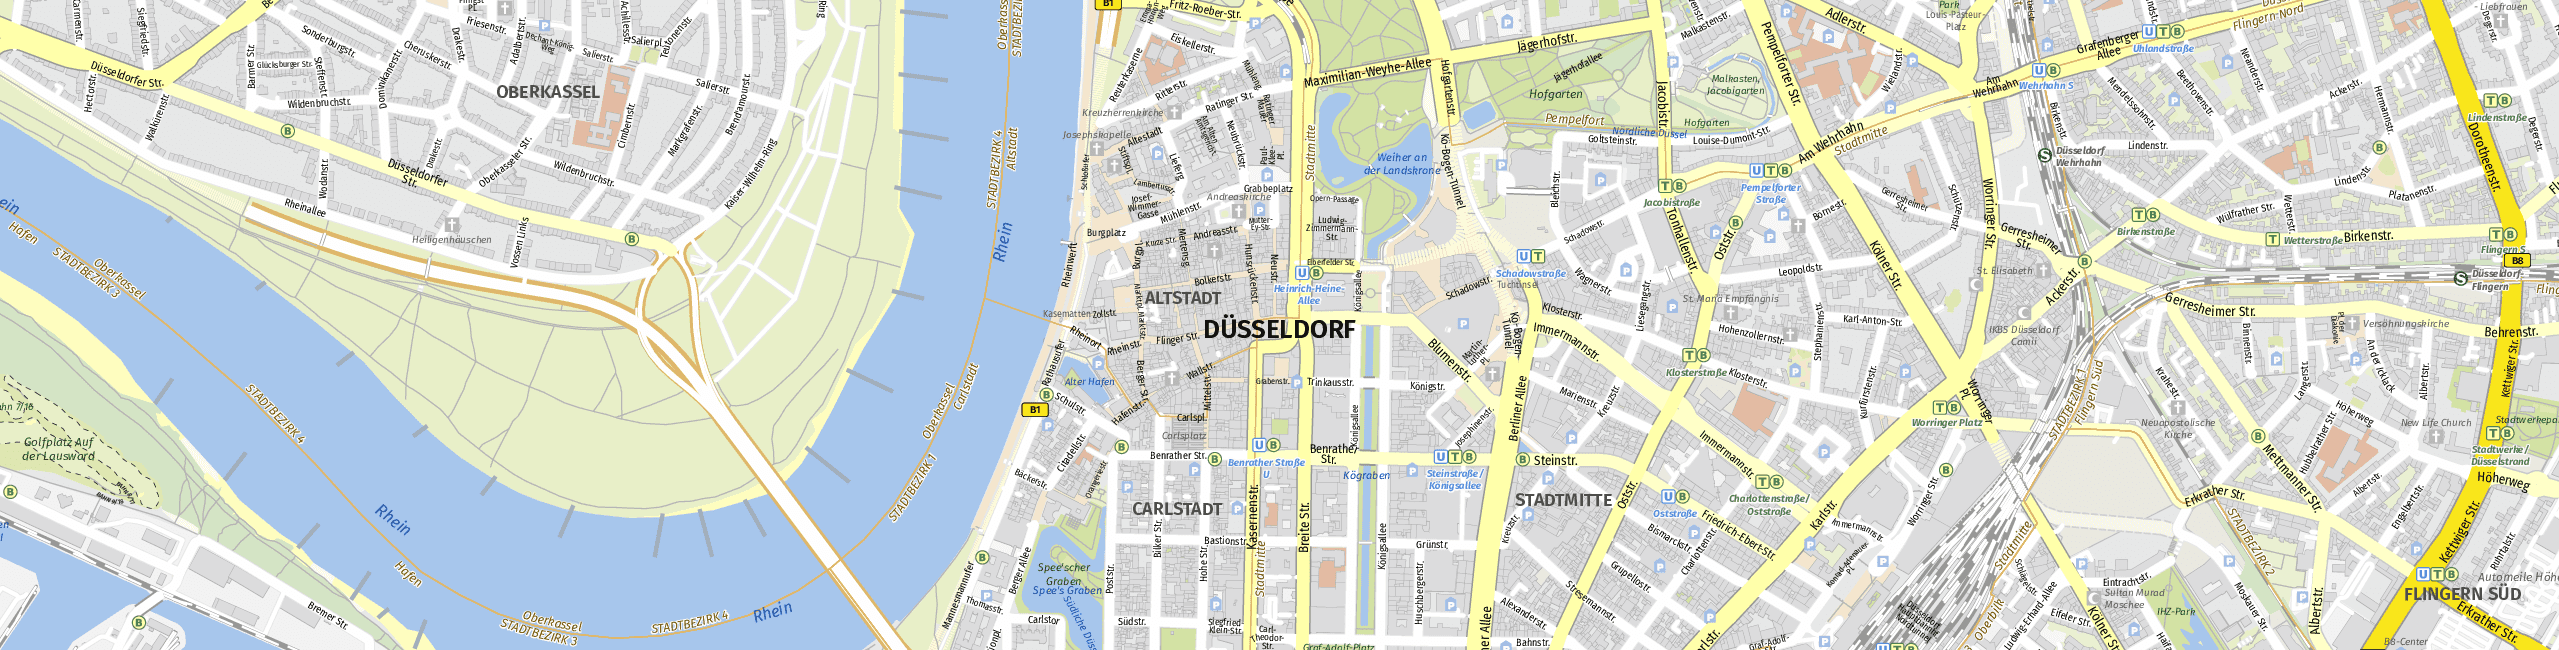 Stadtplan Dusseldorf zum Downloaden.